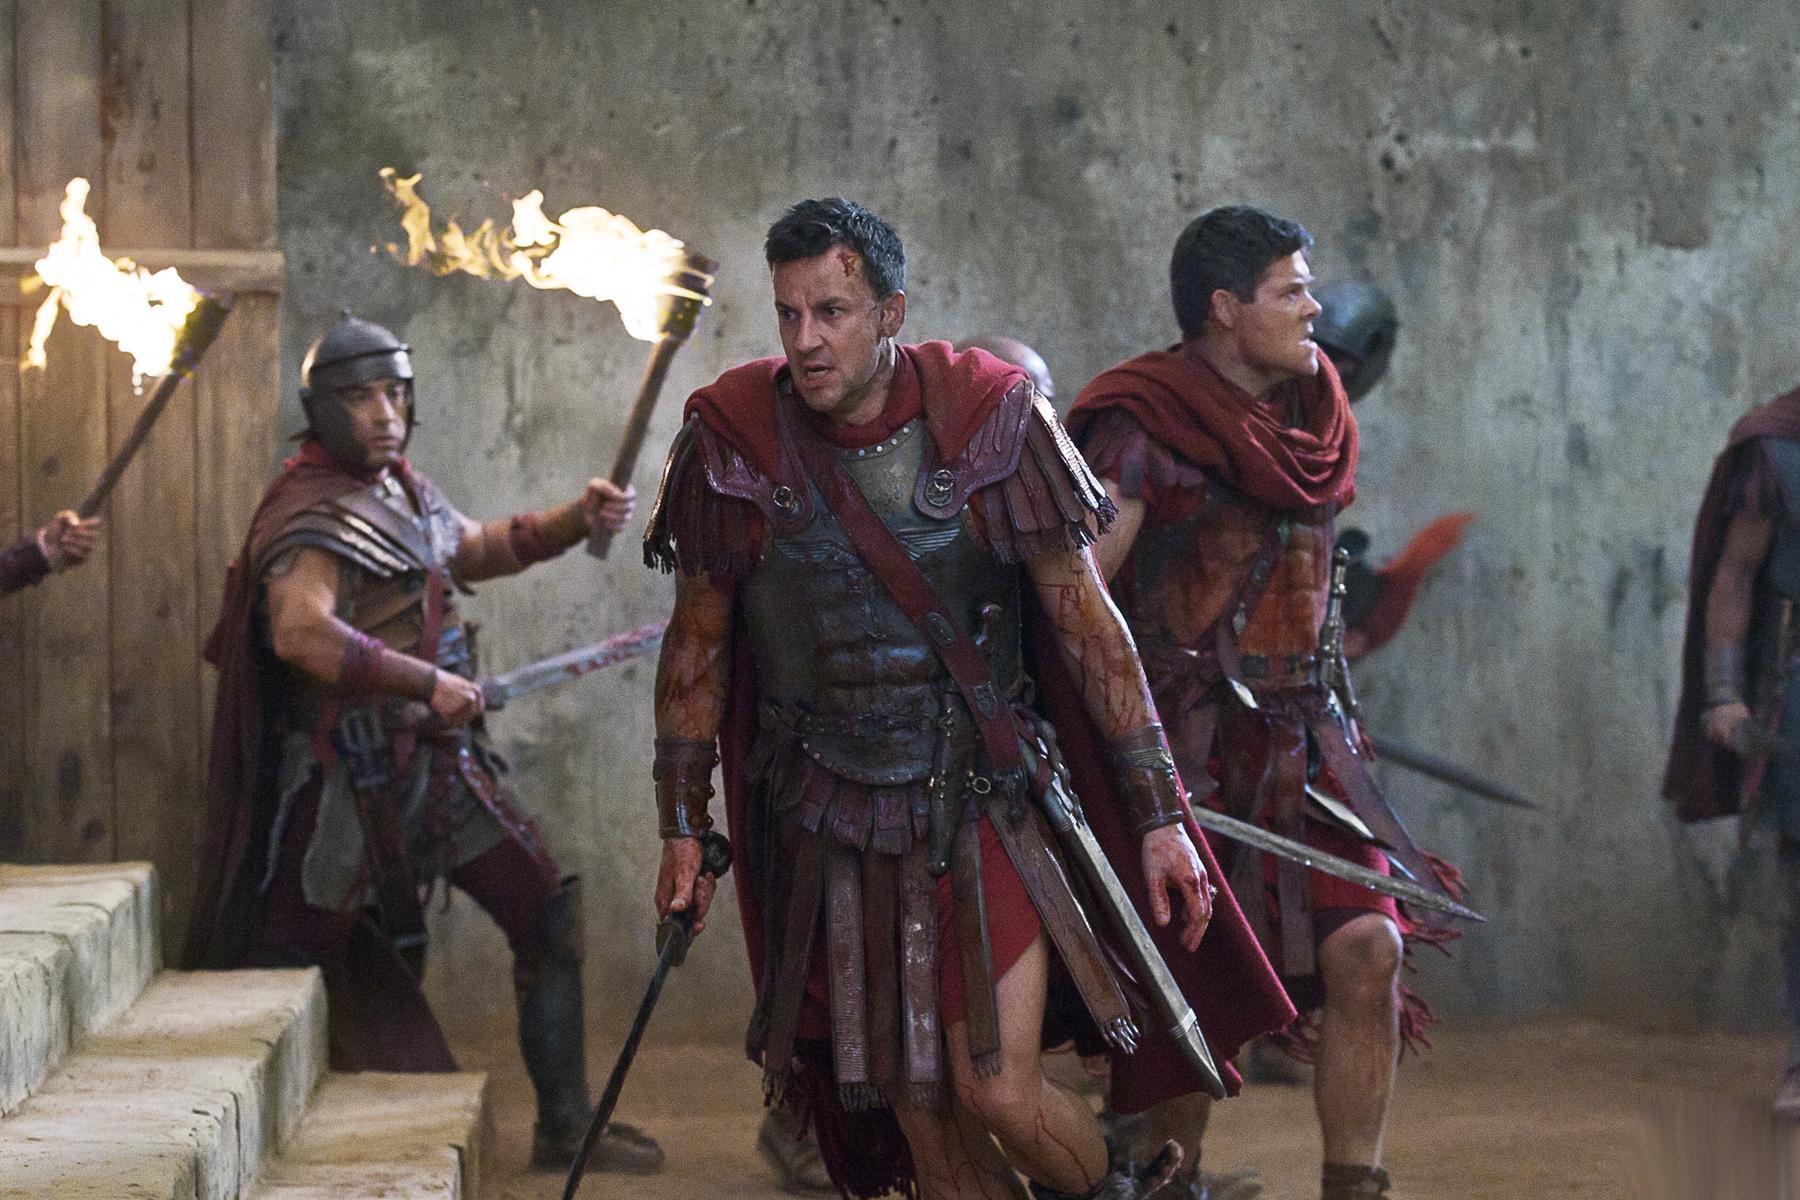 Spartacus 1